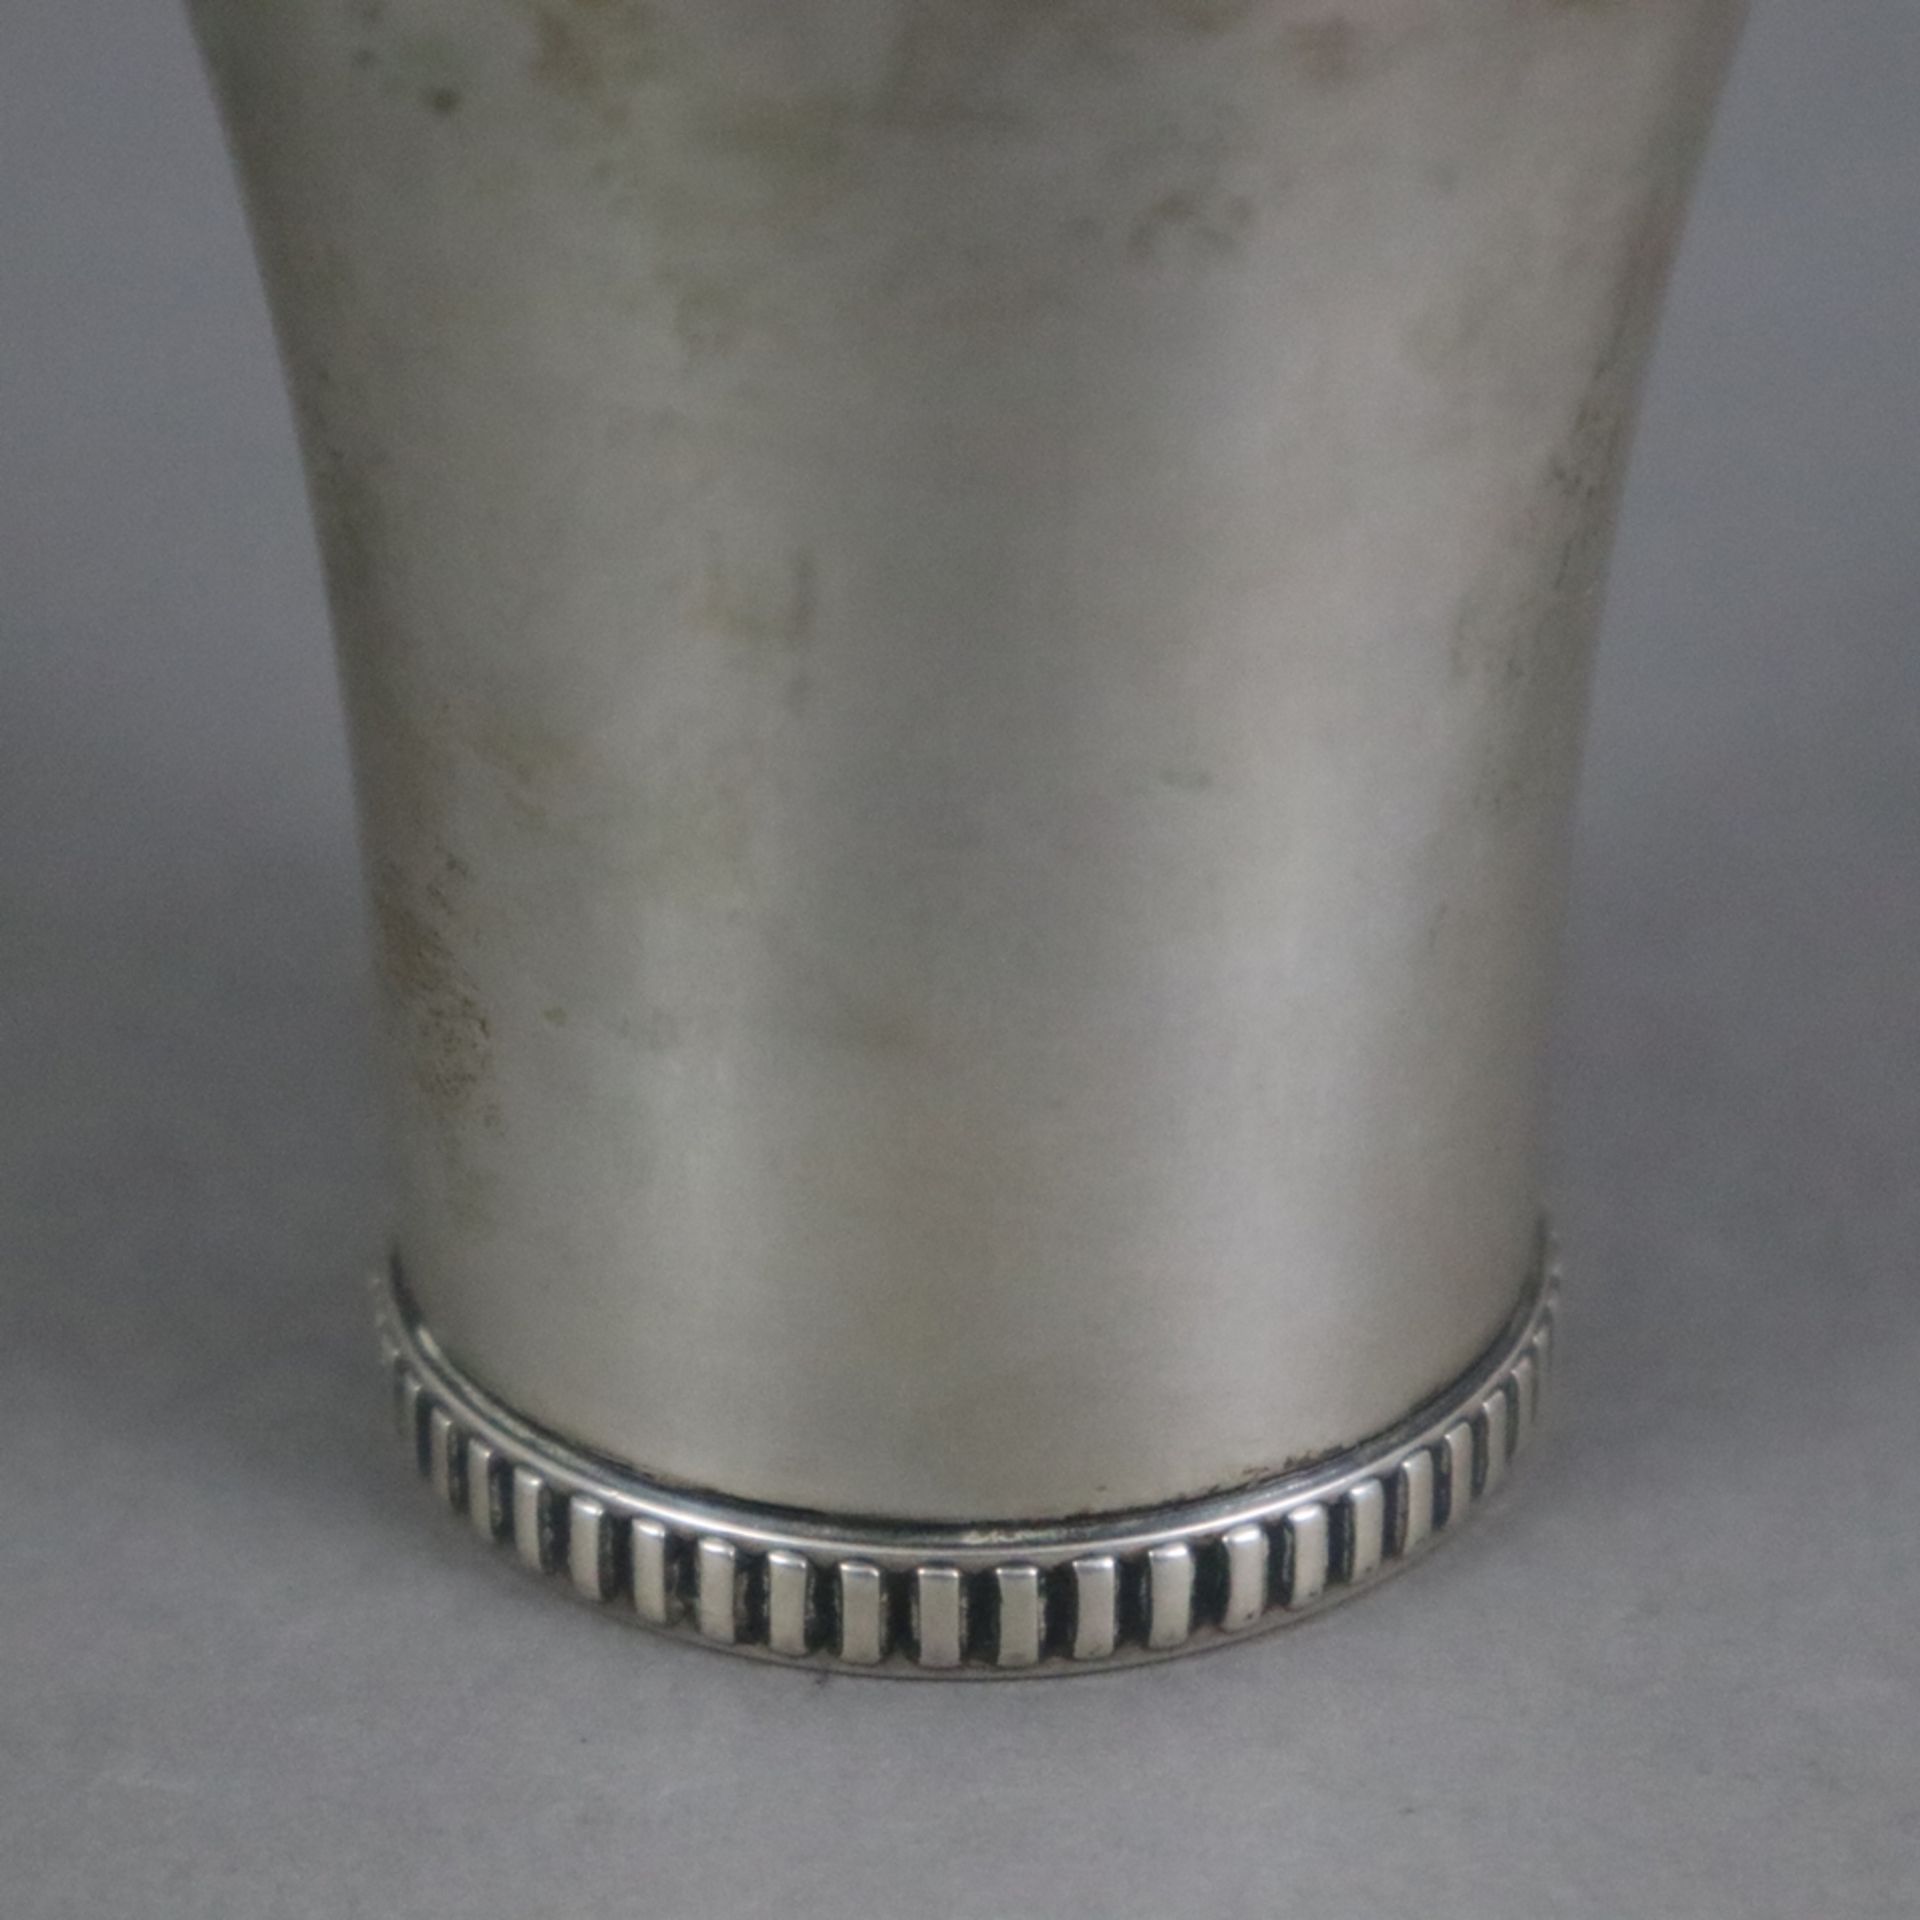 Schnapsbecher - Dänemark, Silber 826/000, 1931, zylindrische Wandung mit ausgestellter Mündung, Sta - Bild 3 aus 4